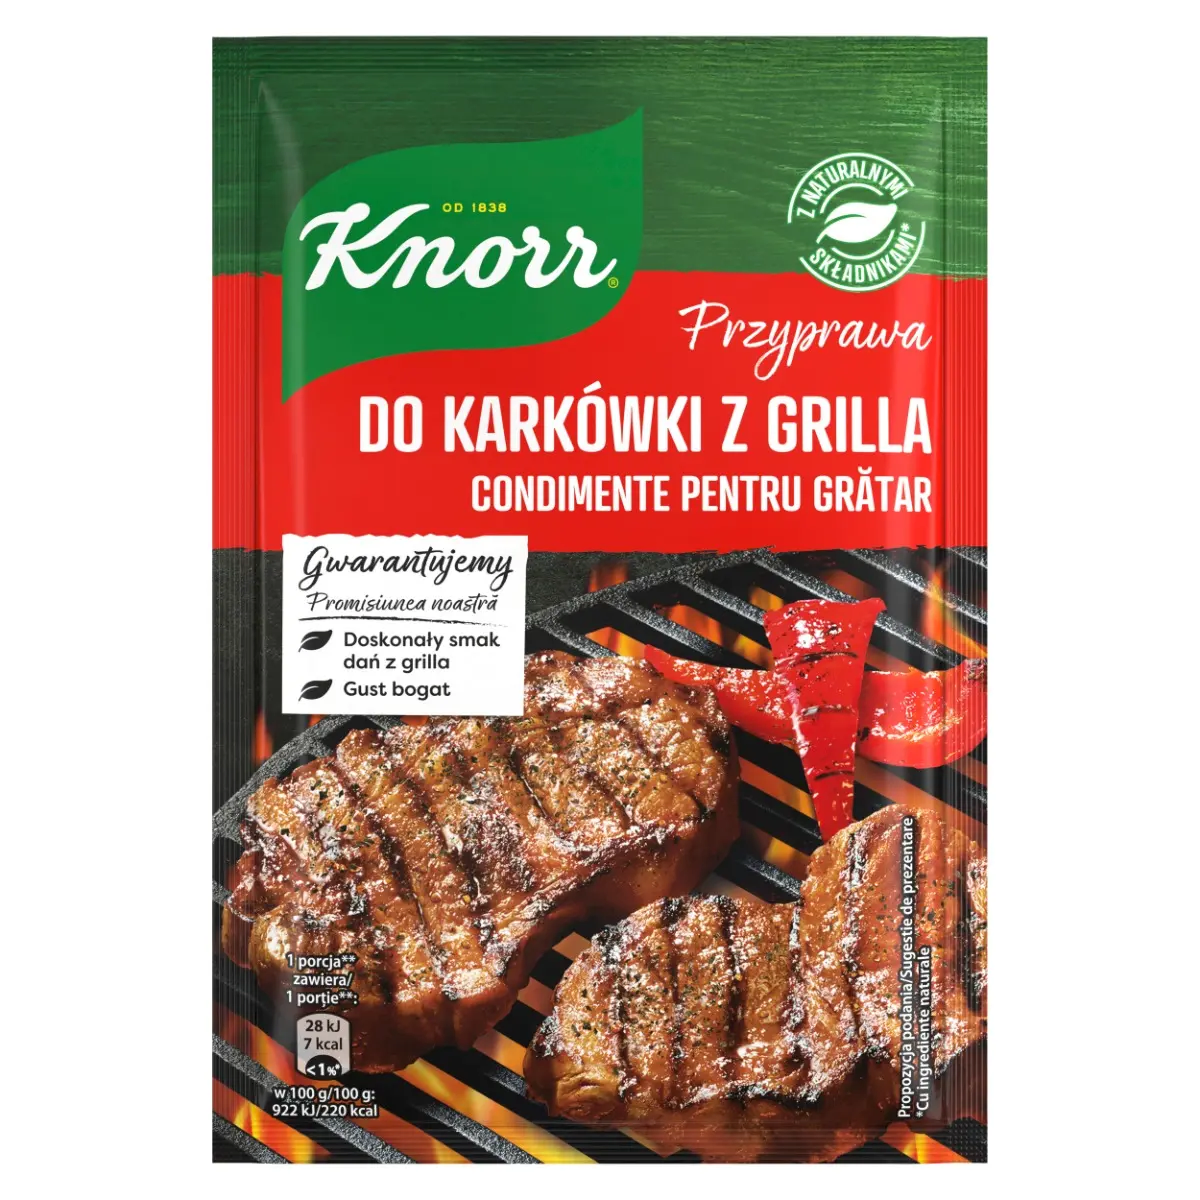 Condimente Gratar Knorr 23G